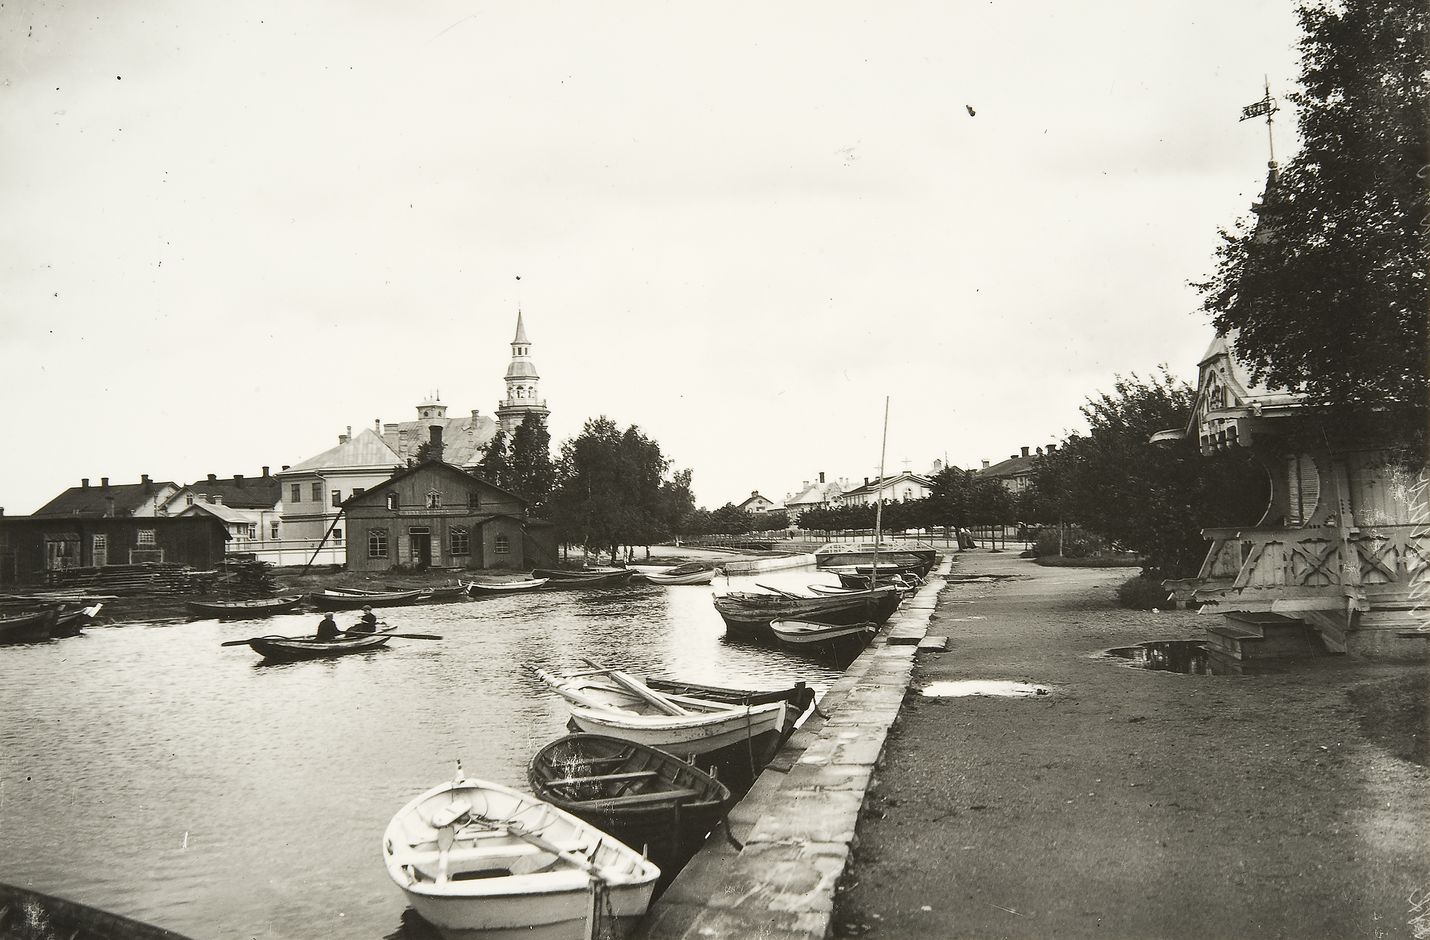 On sitä ennenkin Kanalissa soudeltu. Kuva on vuodelta 1908.